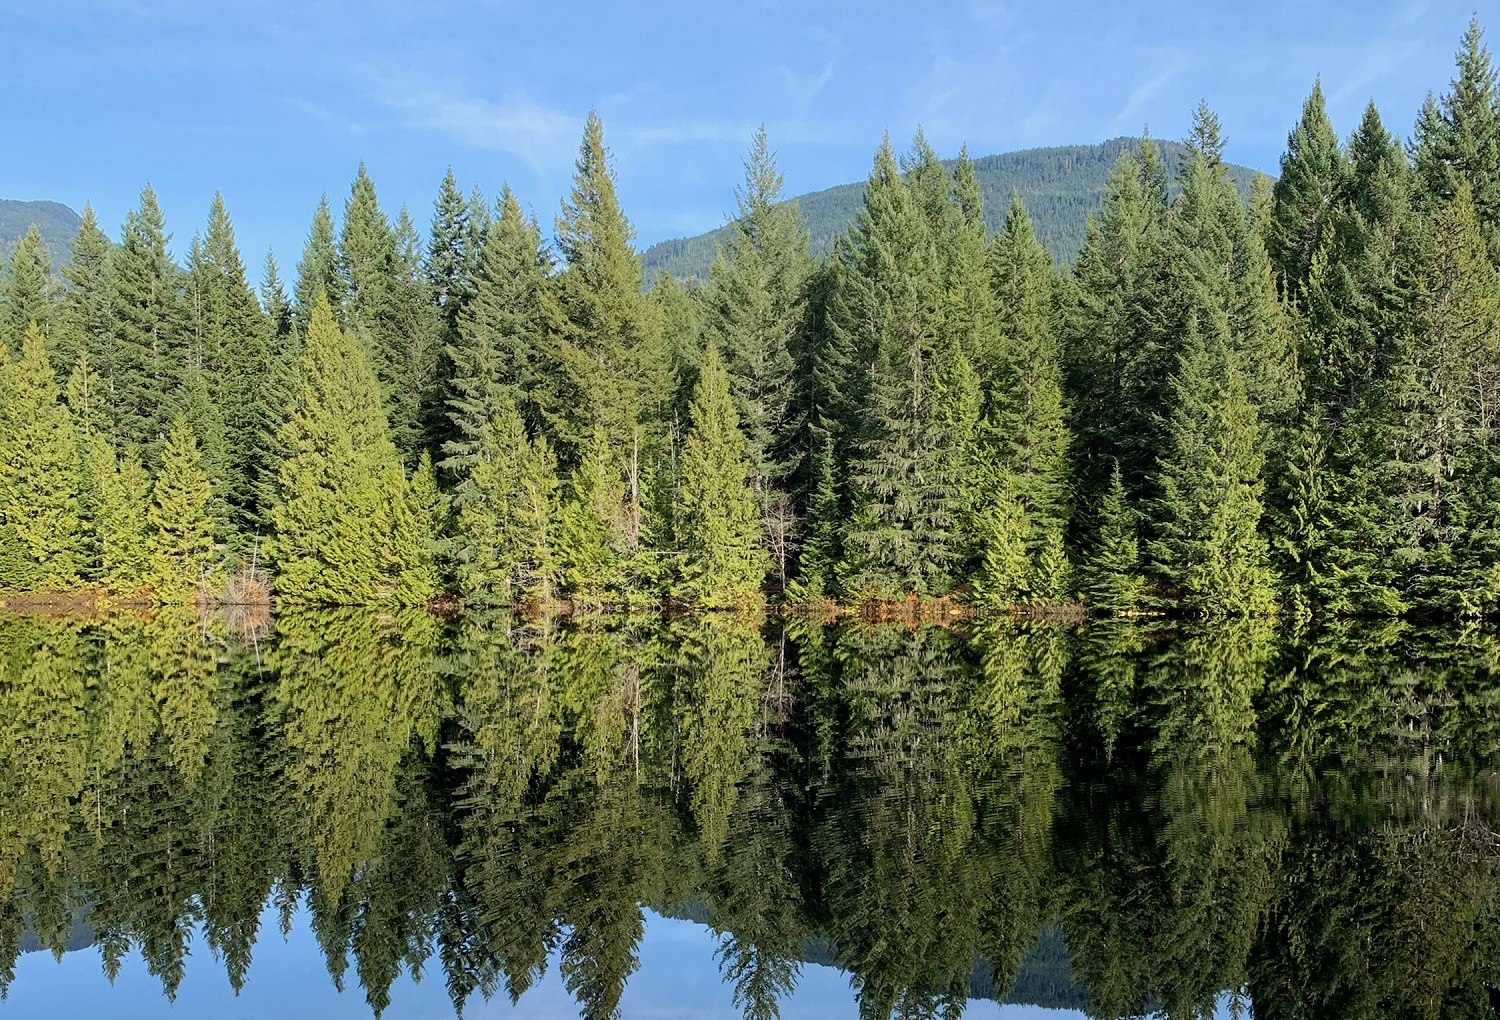 Best Places to Explore the Squamish Rainforest | Tourism Squamish